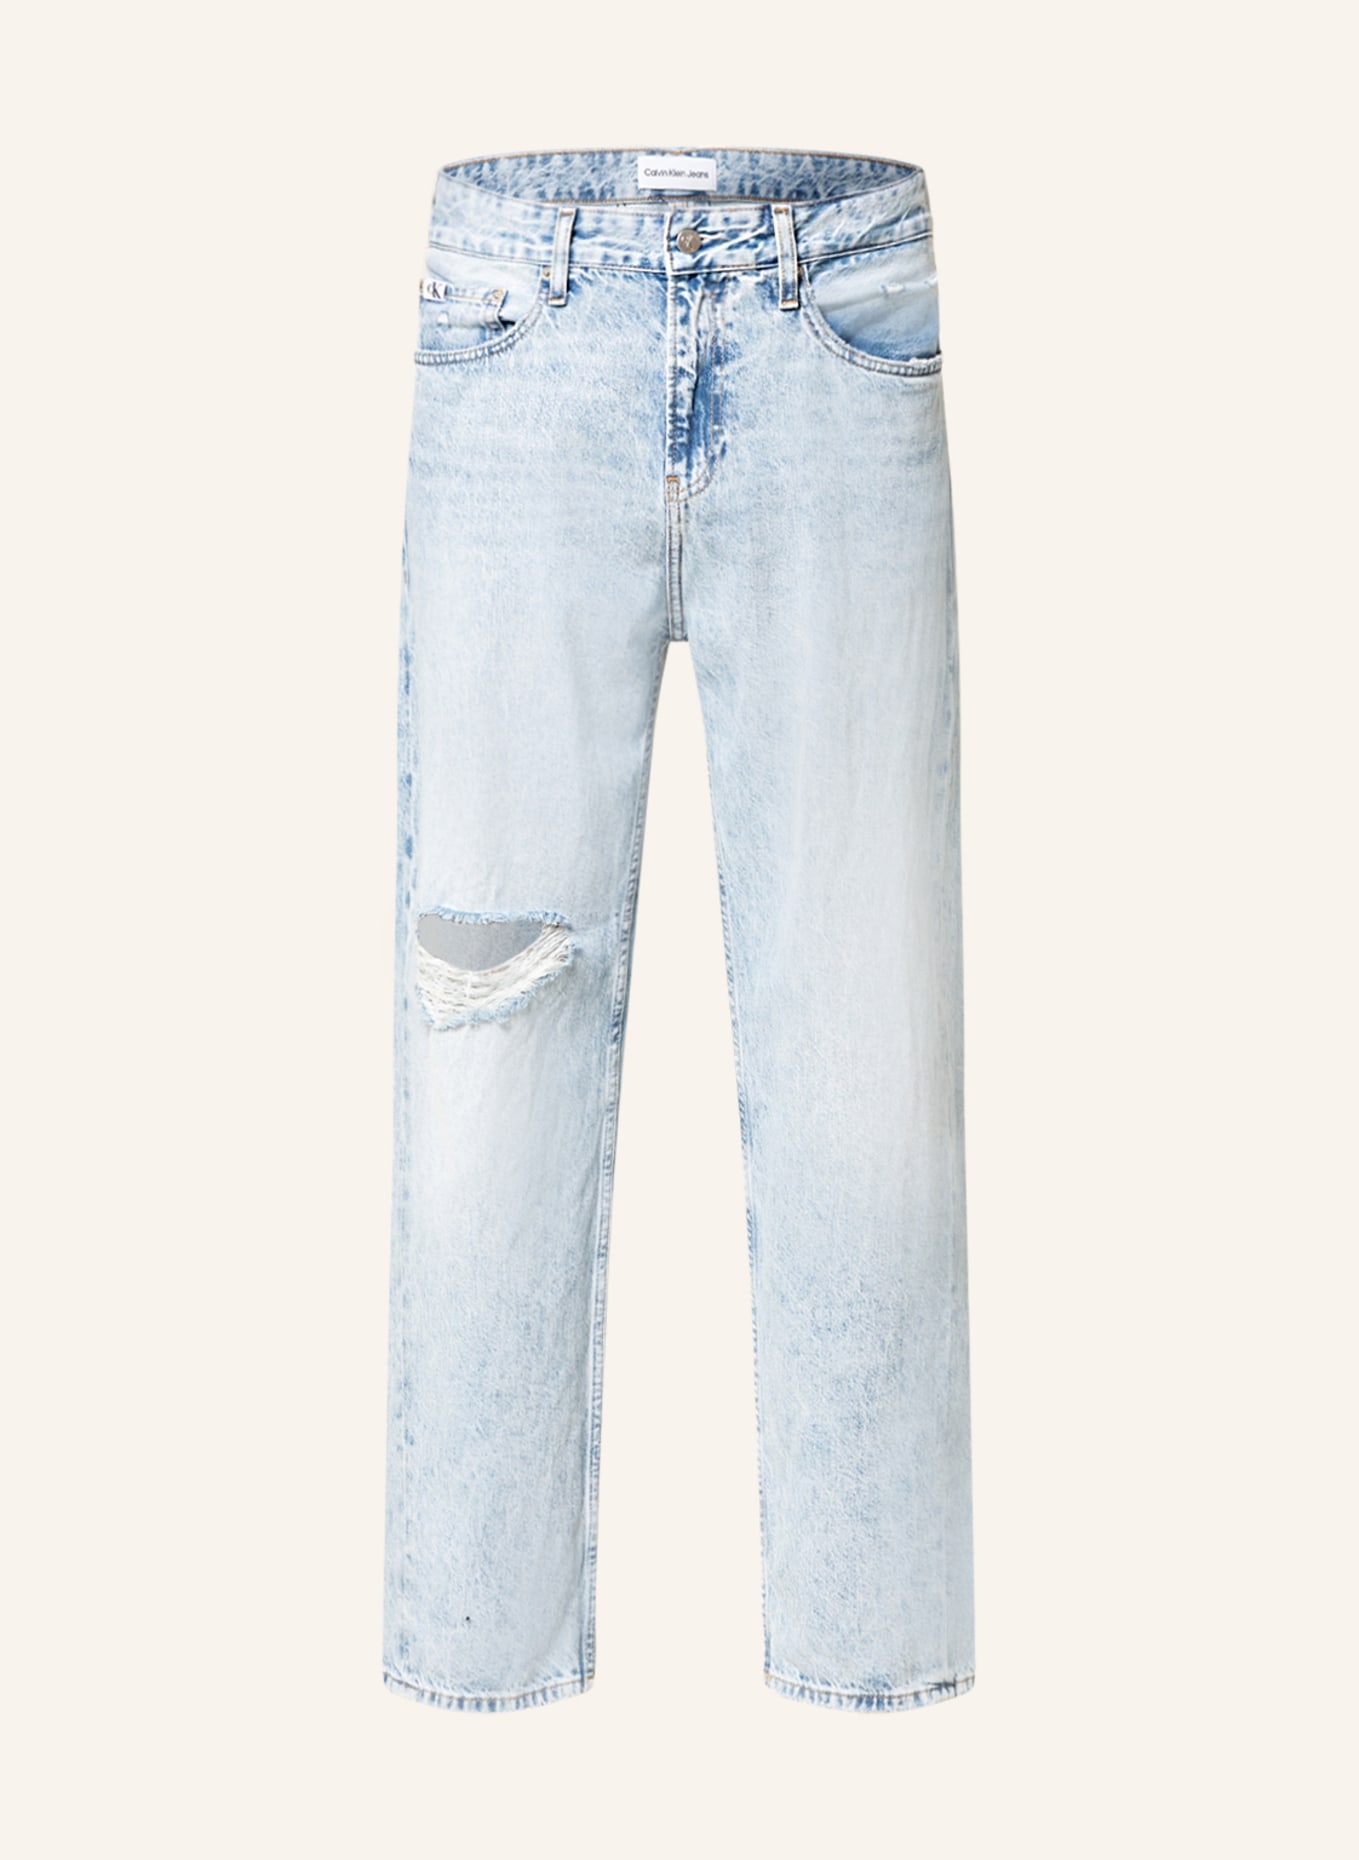 Calvin Klein Jeans Destroyed Jeans regular fit     , Color: 1AA Denim Light (Image 1)